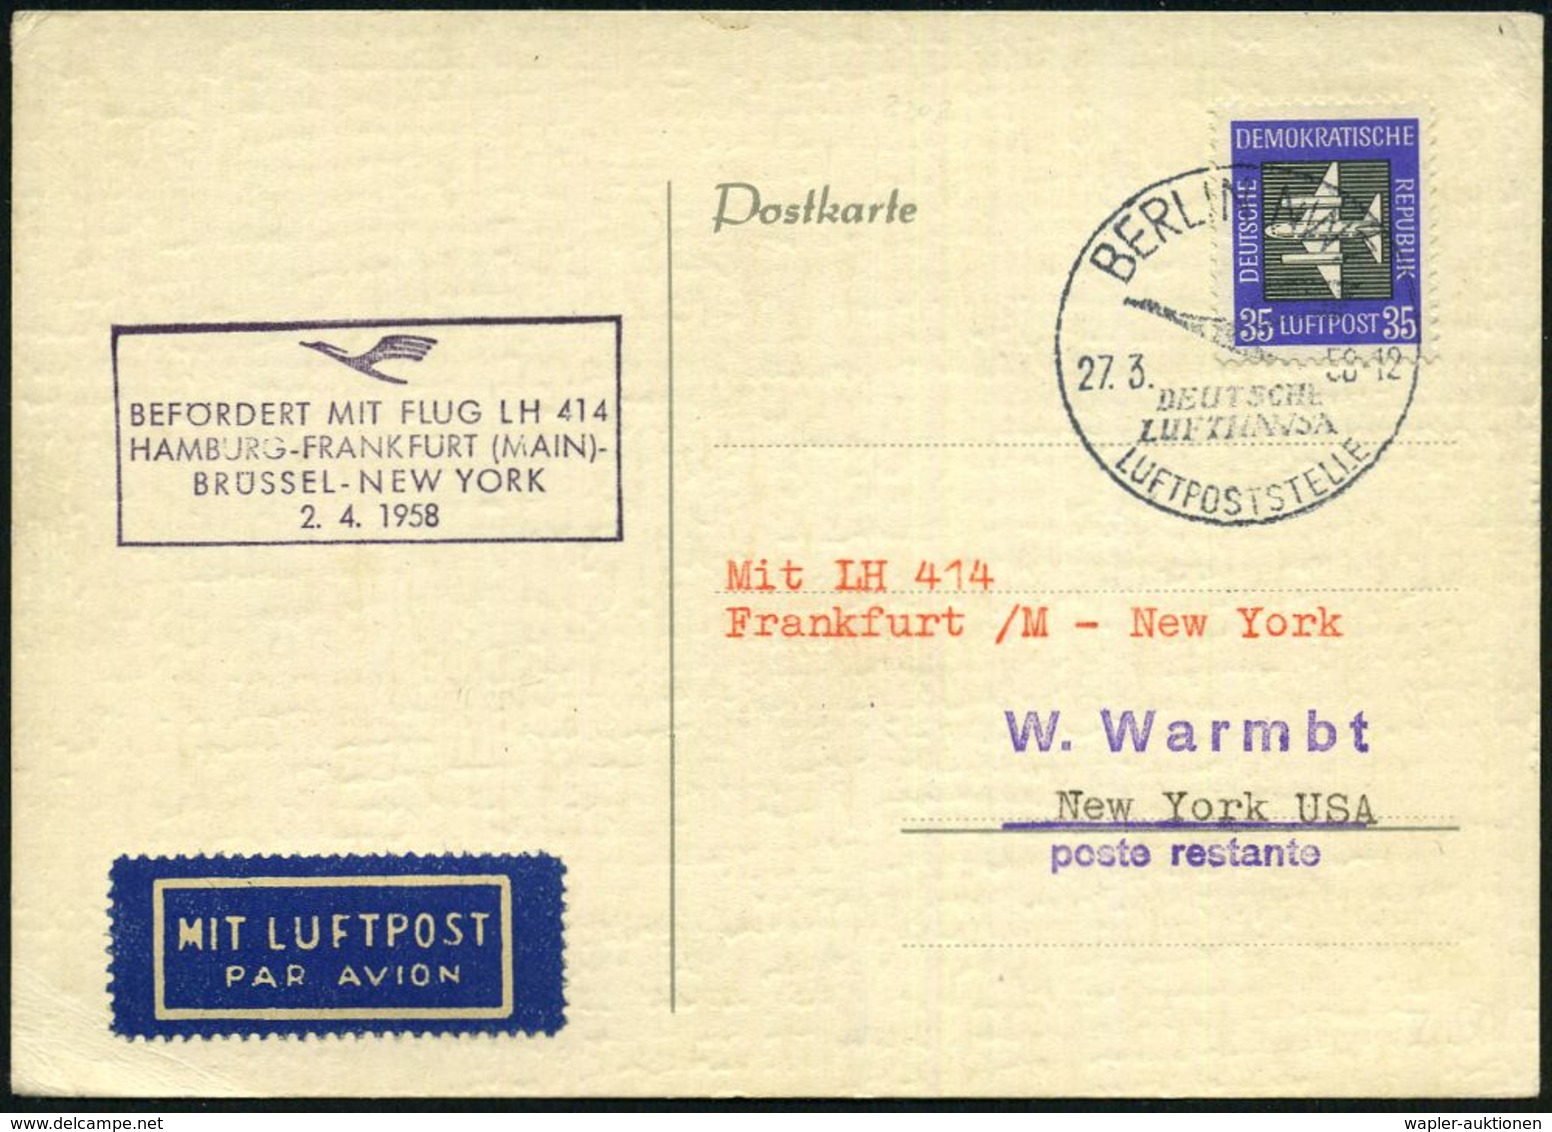 BERLIN NW 7/ DEUTSCHE/ LUFTHANSA/ LUFTPOSTSTELLE 1958 (27.3.) HWSt Auf EF DDR 35 Pf. Flp. (Mi.611 EF) + Viol. HdN: BEFÖR - Andere (Lucht)